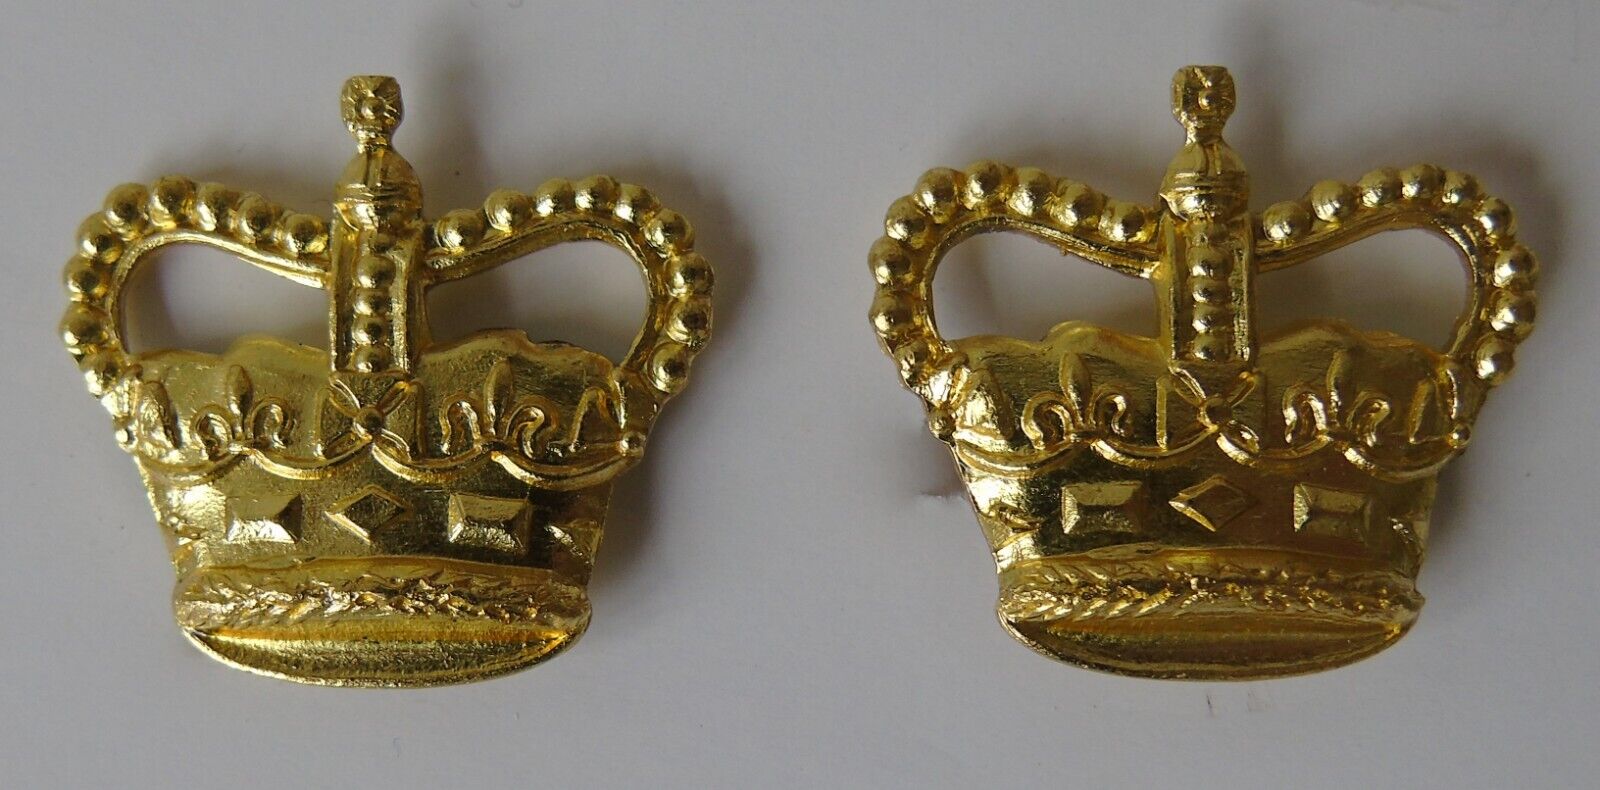 British Army Majors Rank Crowns